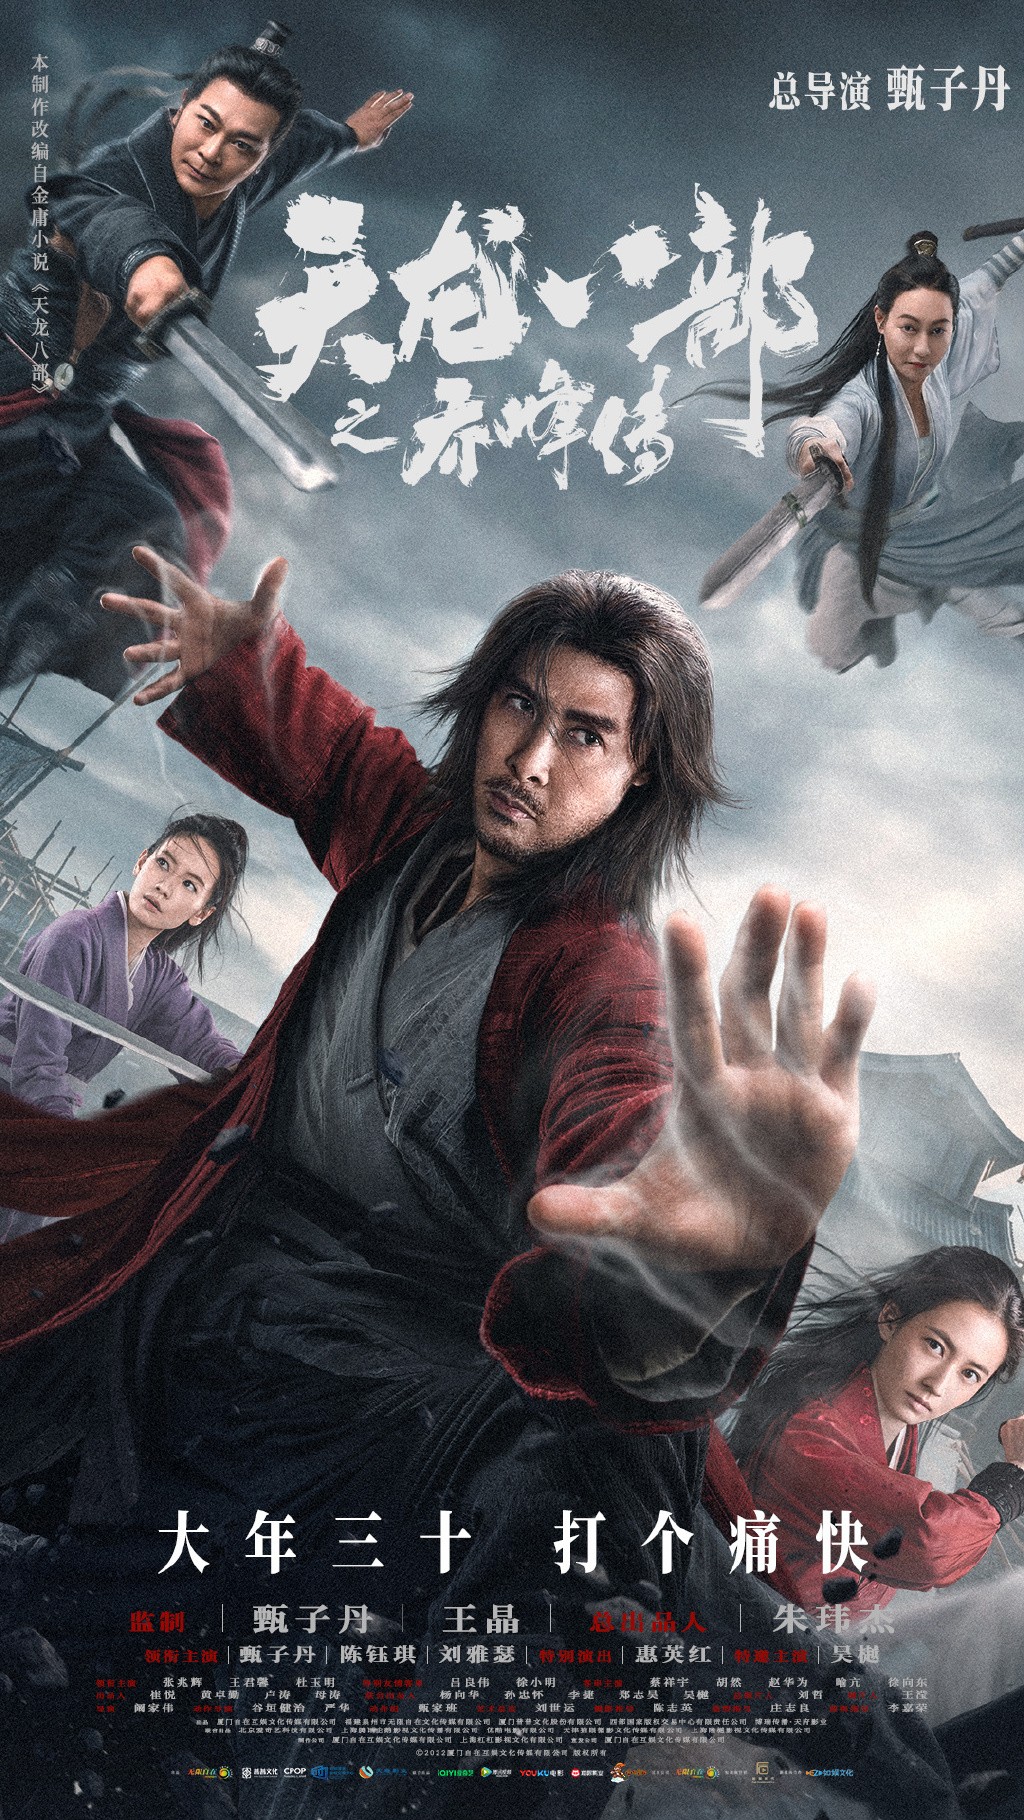 《天龙八部之乔峰传》称霸大马贺岁档 上映8天票房破320万令吉 - 辣手网